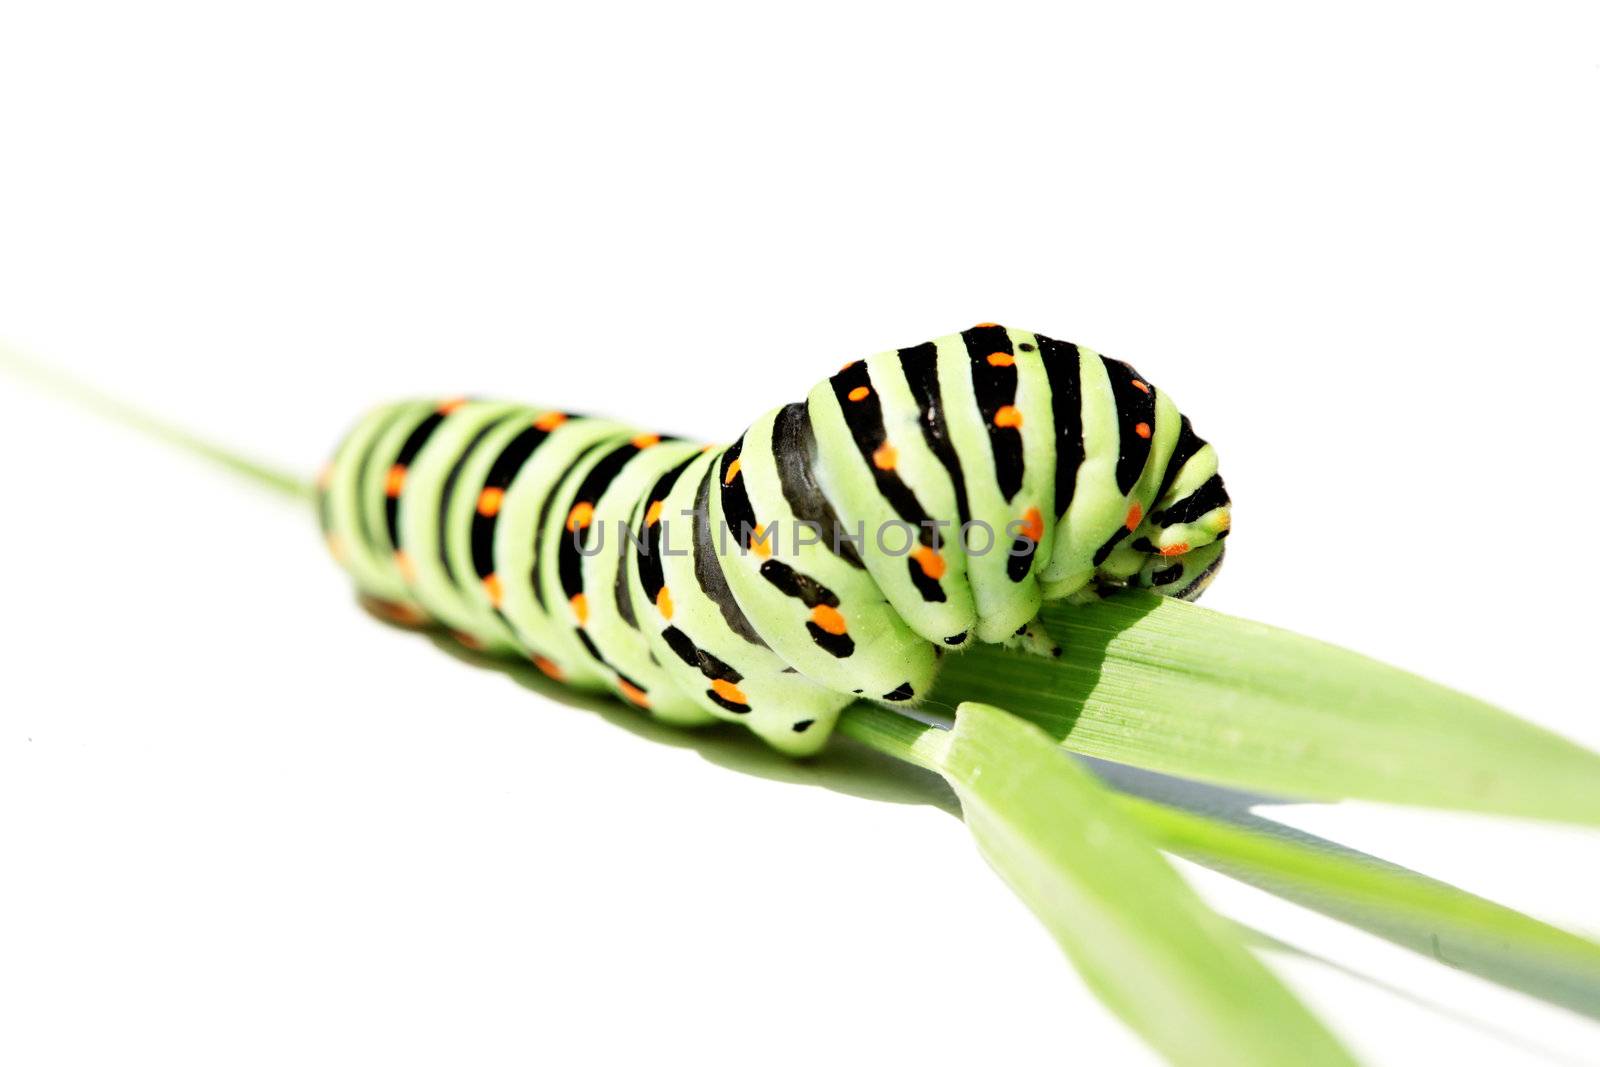 Caterpillar by petrkurgan